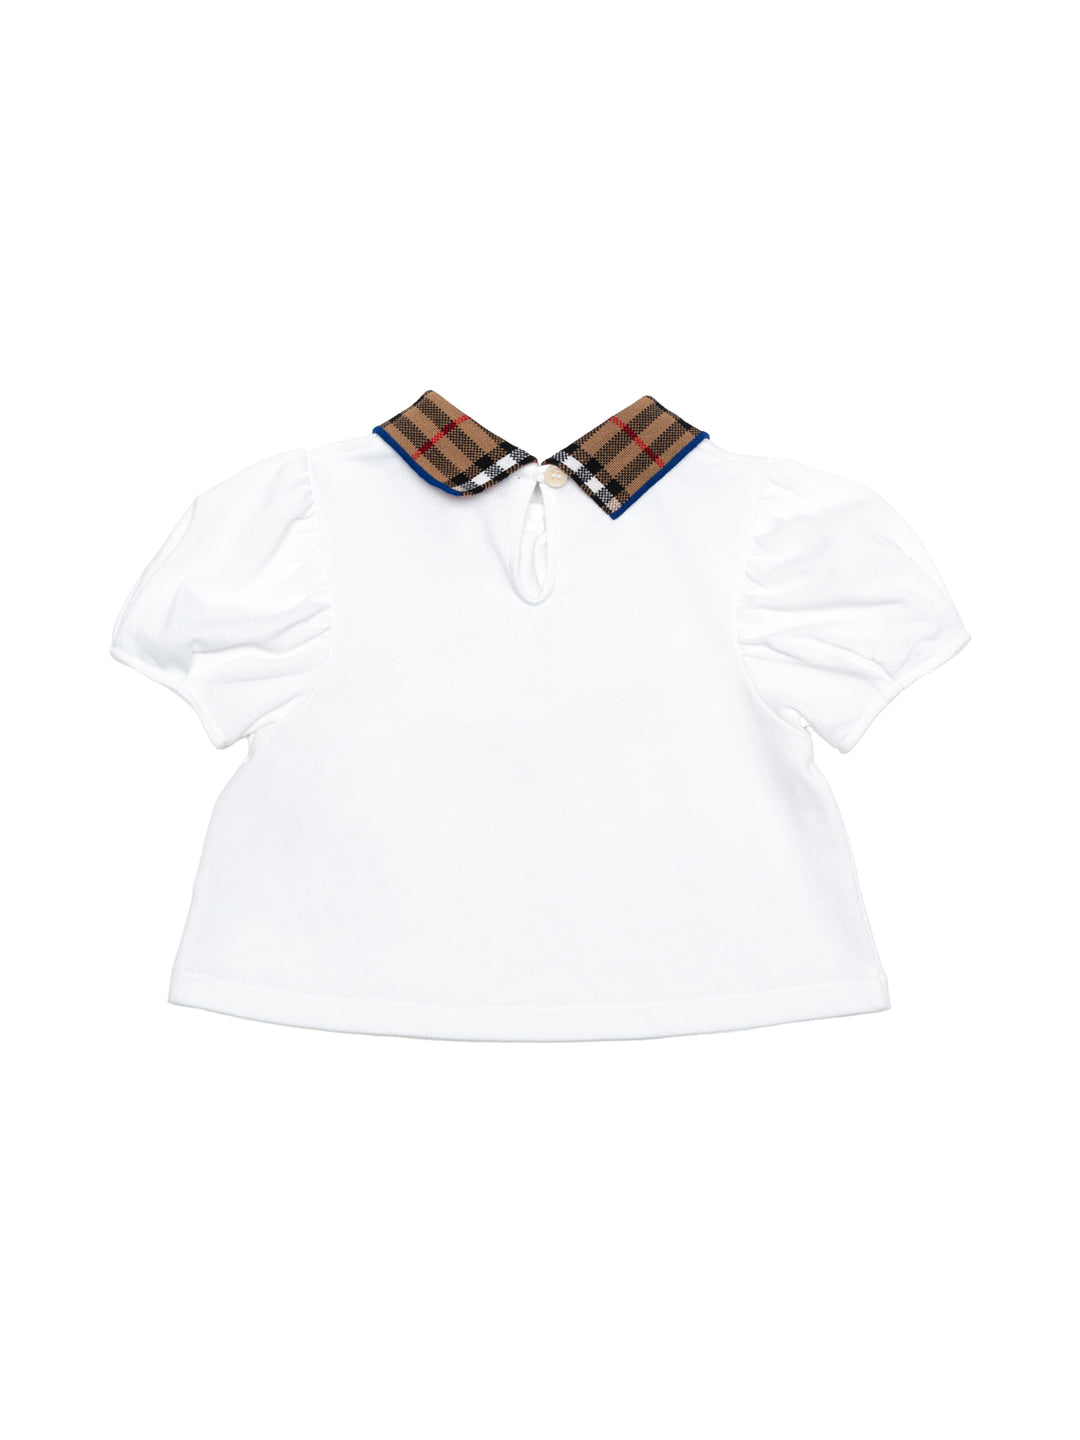 IG5 Alesa Poloshirt mit Vintage Check - Weiß